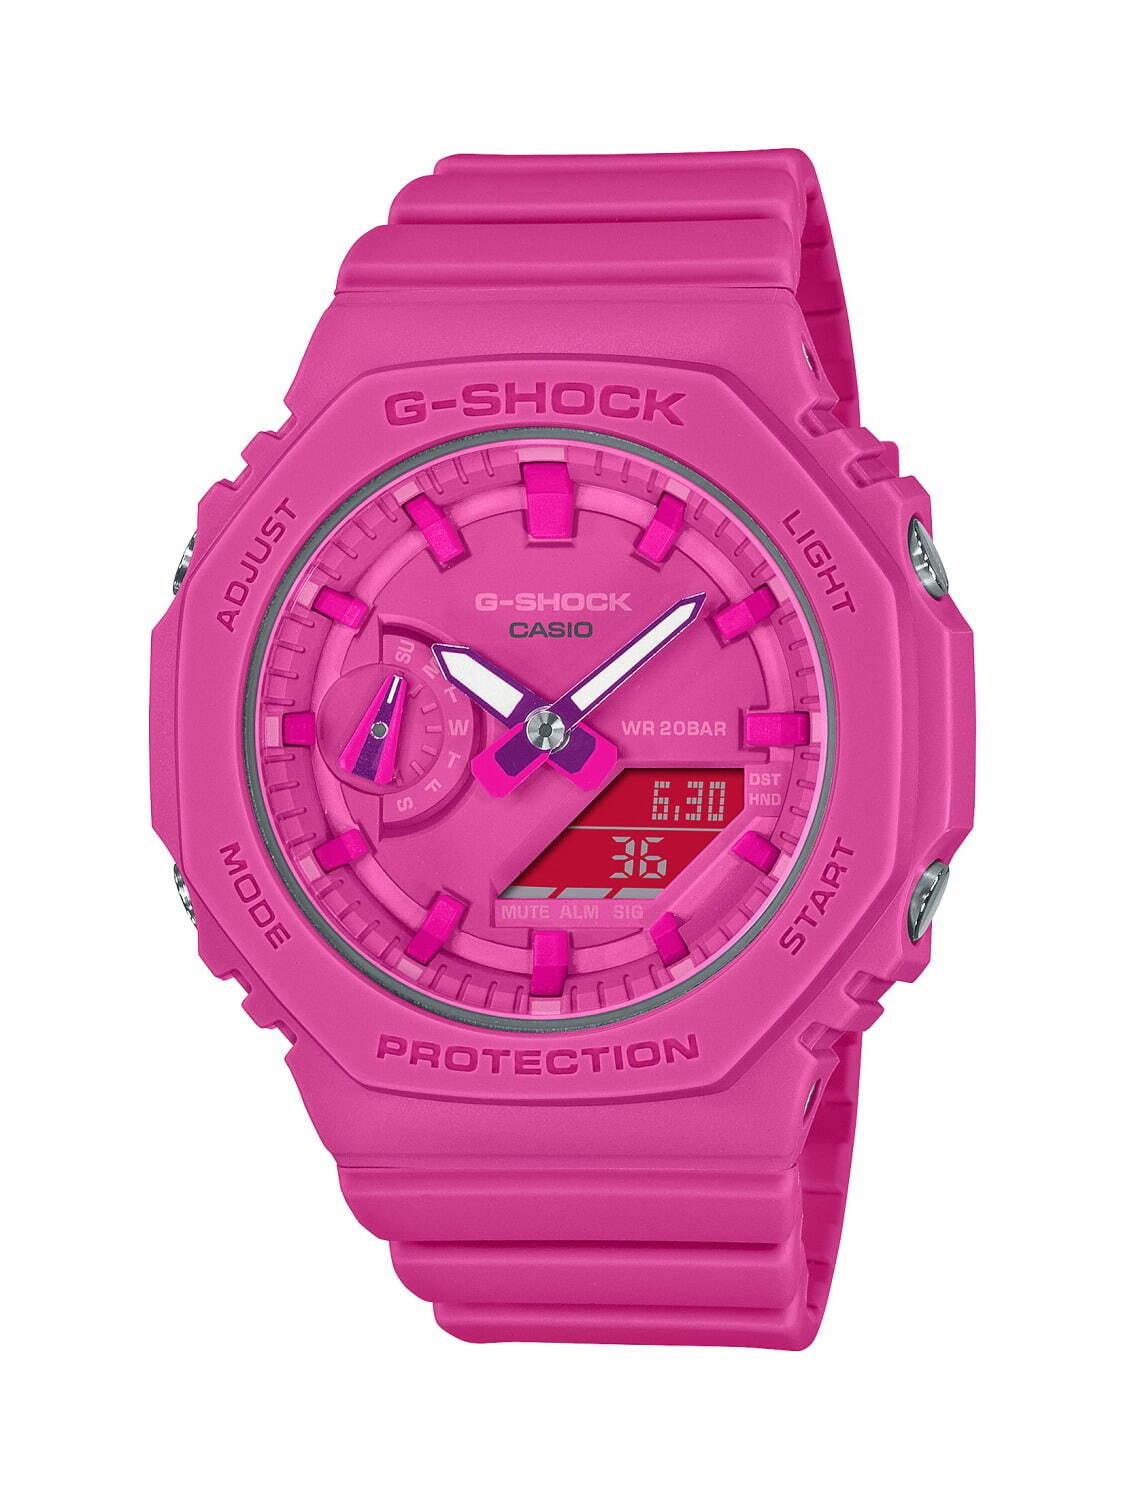 G-SHOCKの新作腕時計、オールピンクに仕上げたデジタル×アナログの